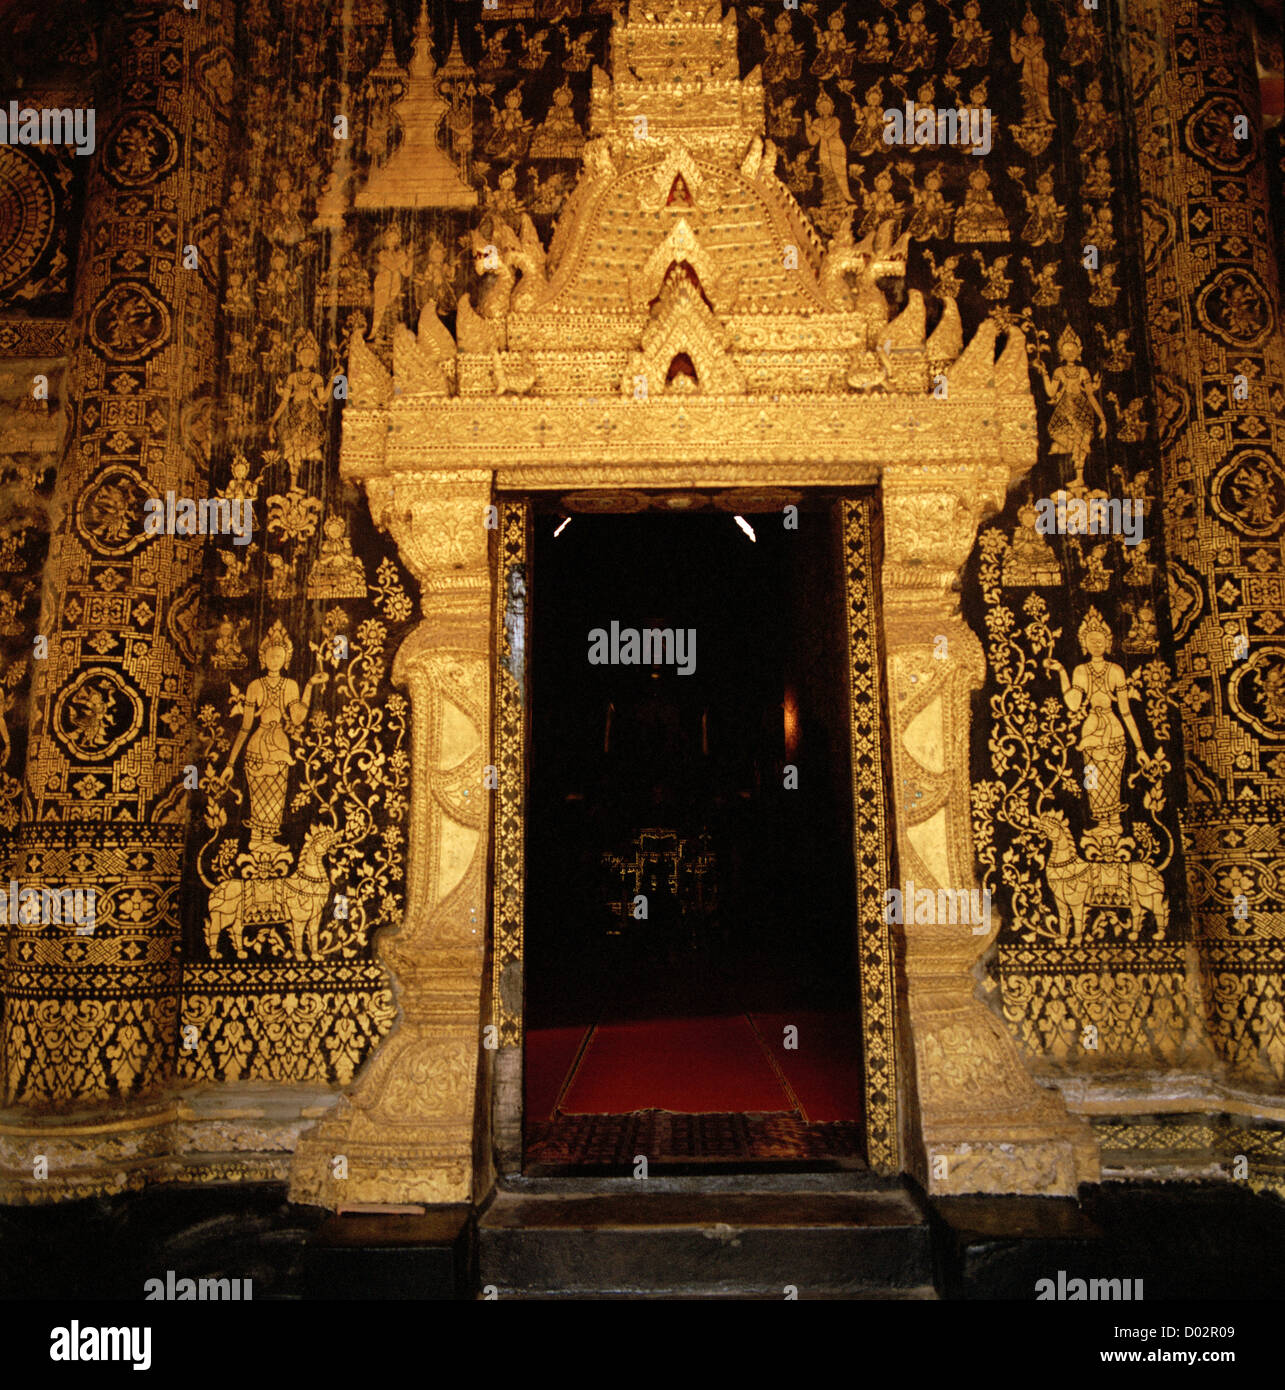 Arte y diseño del templo budista de Wat Xieng Thong Templo de Luang Prabang, en Laos, en Indochina, en el Lejano Oriente, el sudeste de Asia. El budismo colorido viaje Foto de stock